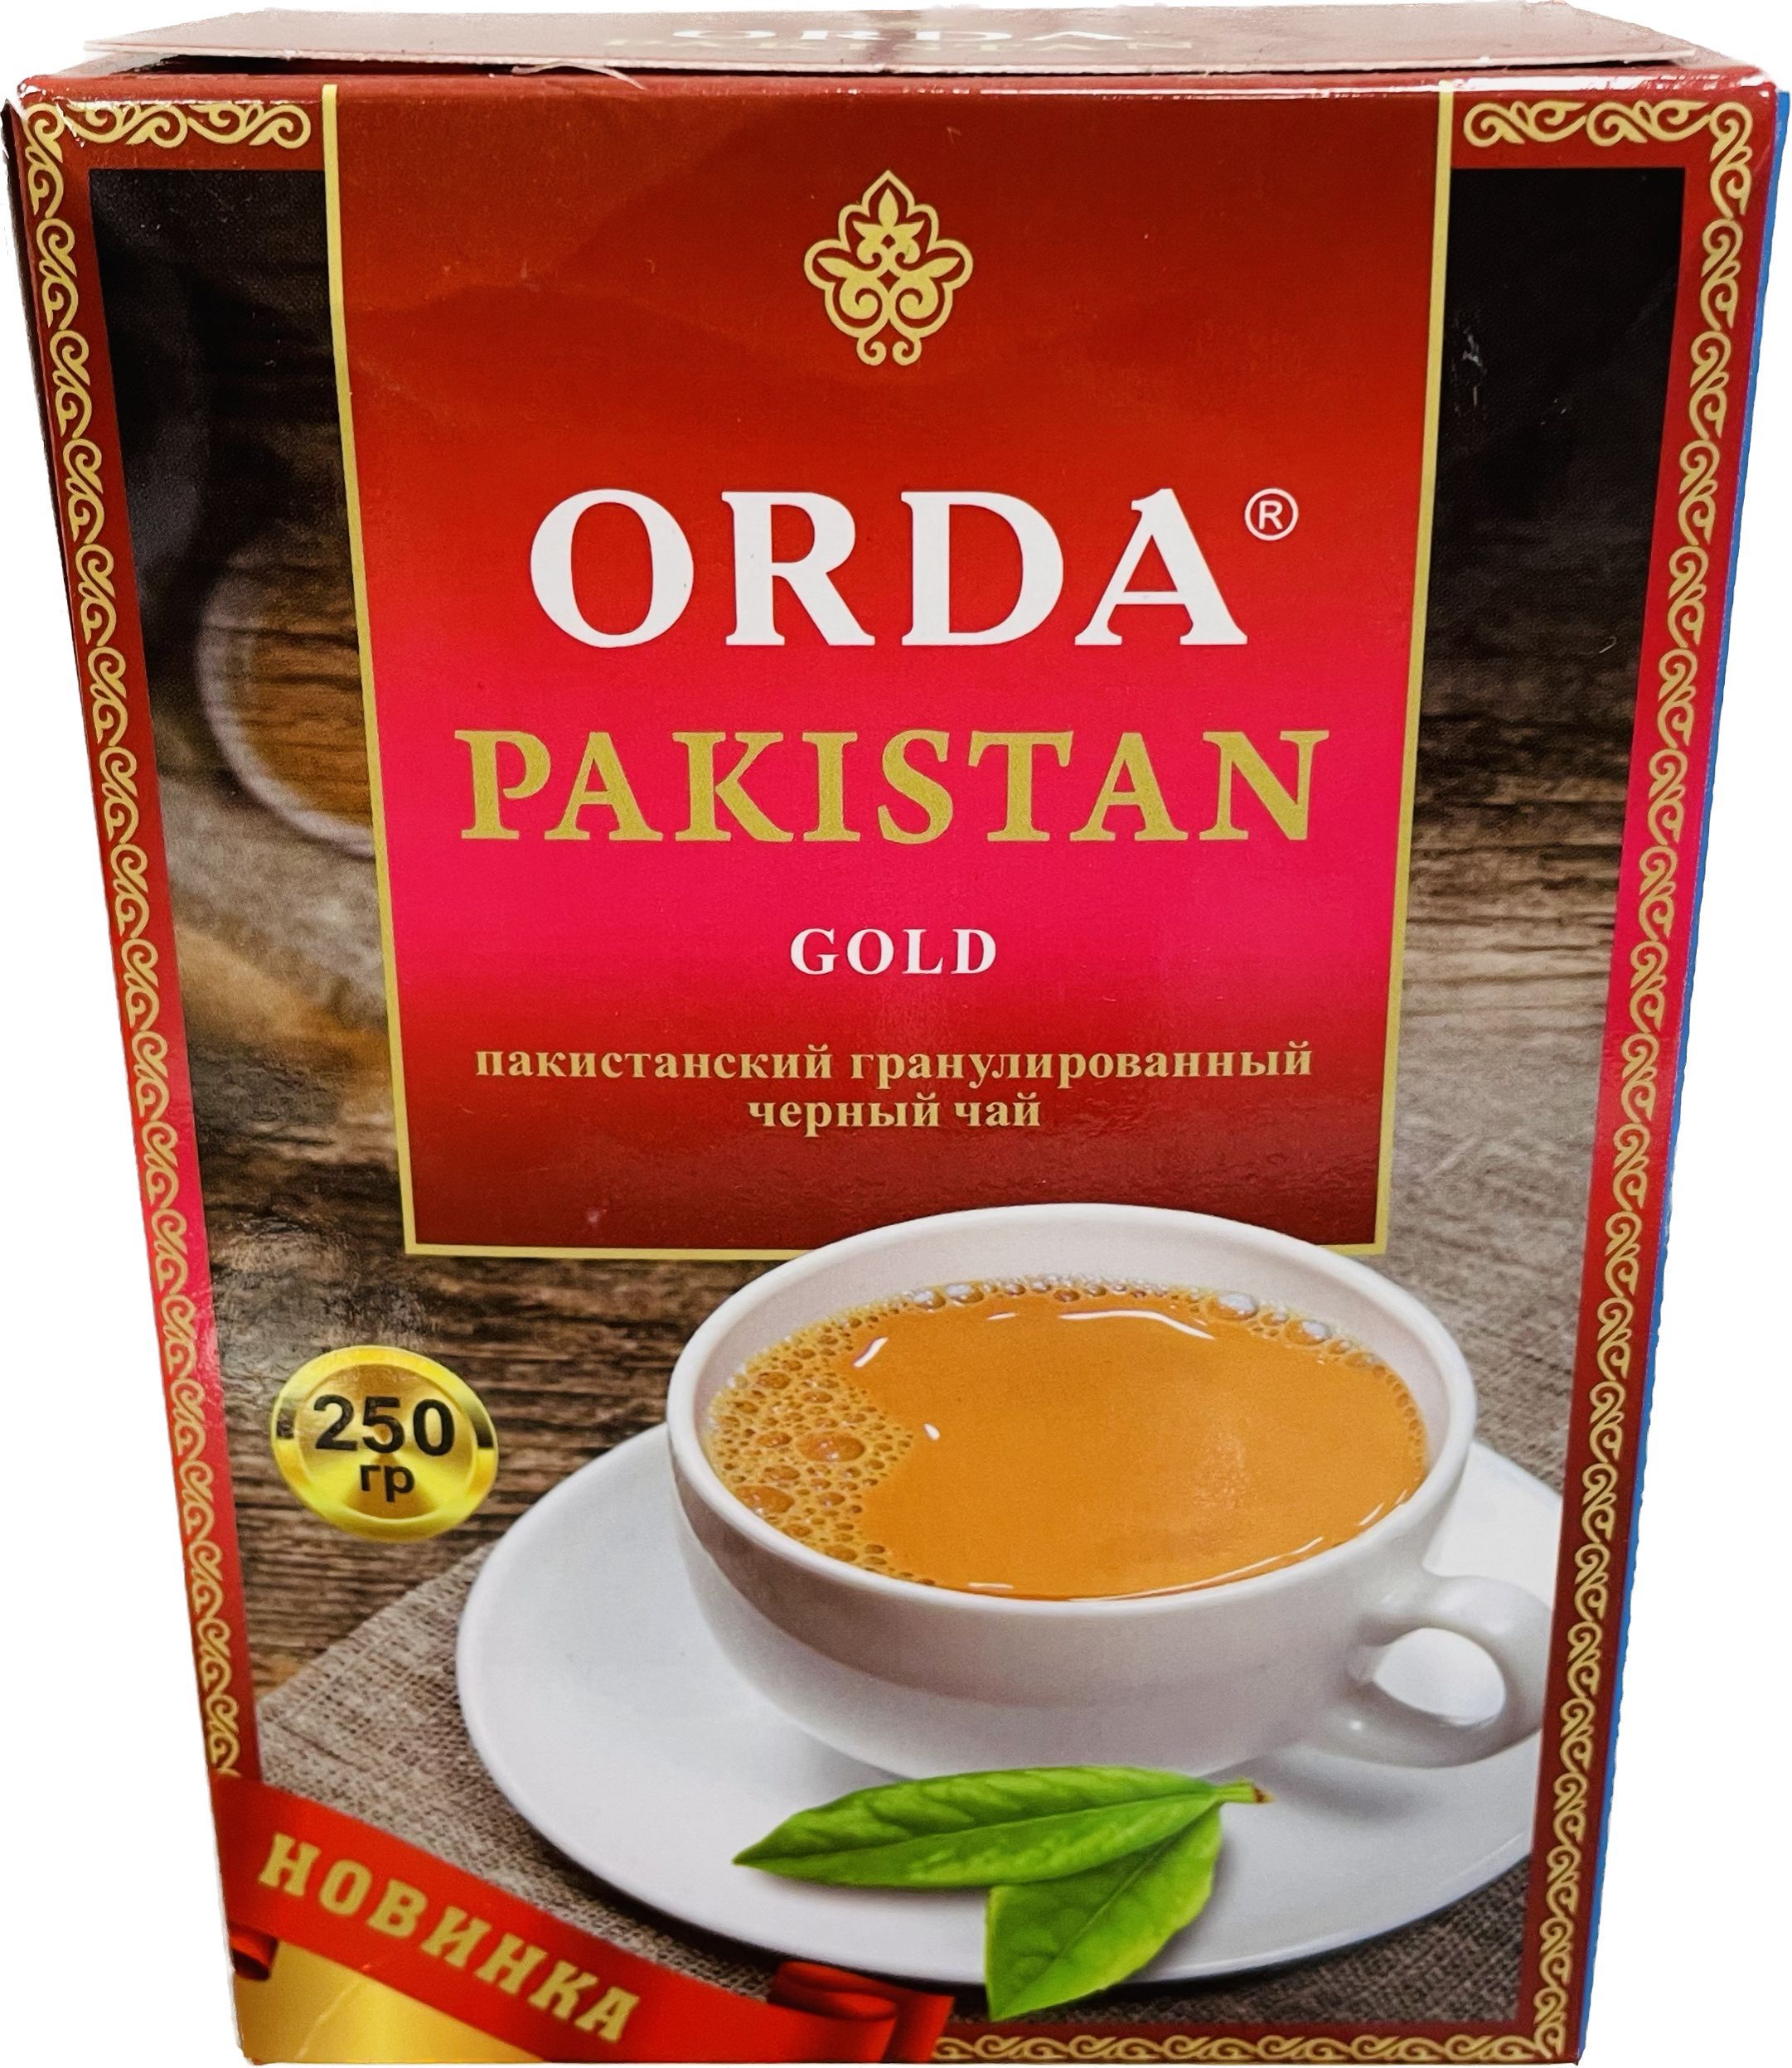 Чай пакистанский гранулированный. Пакистанский чай гранулированный. Чай Орда Пакистан Голд 250 гр.